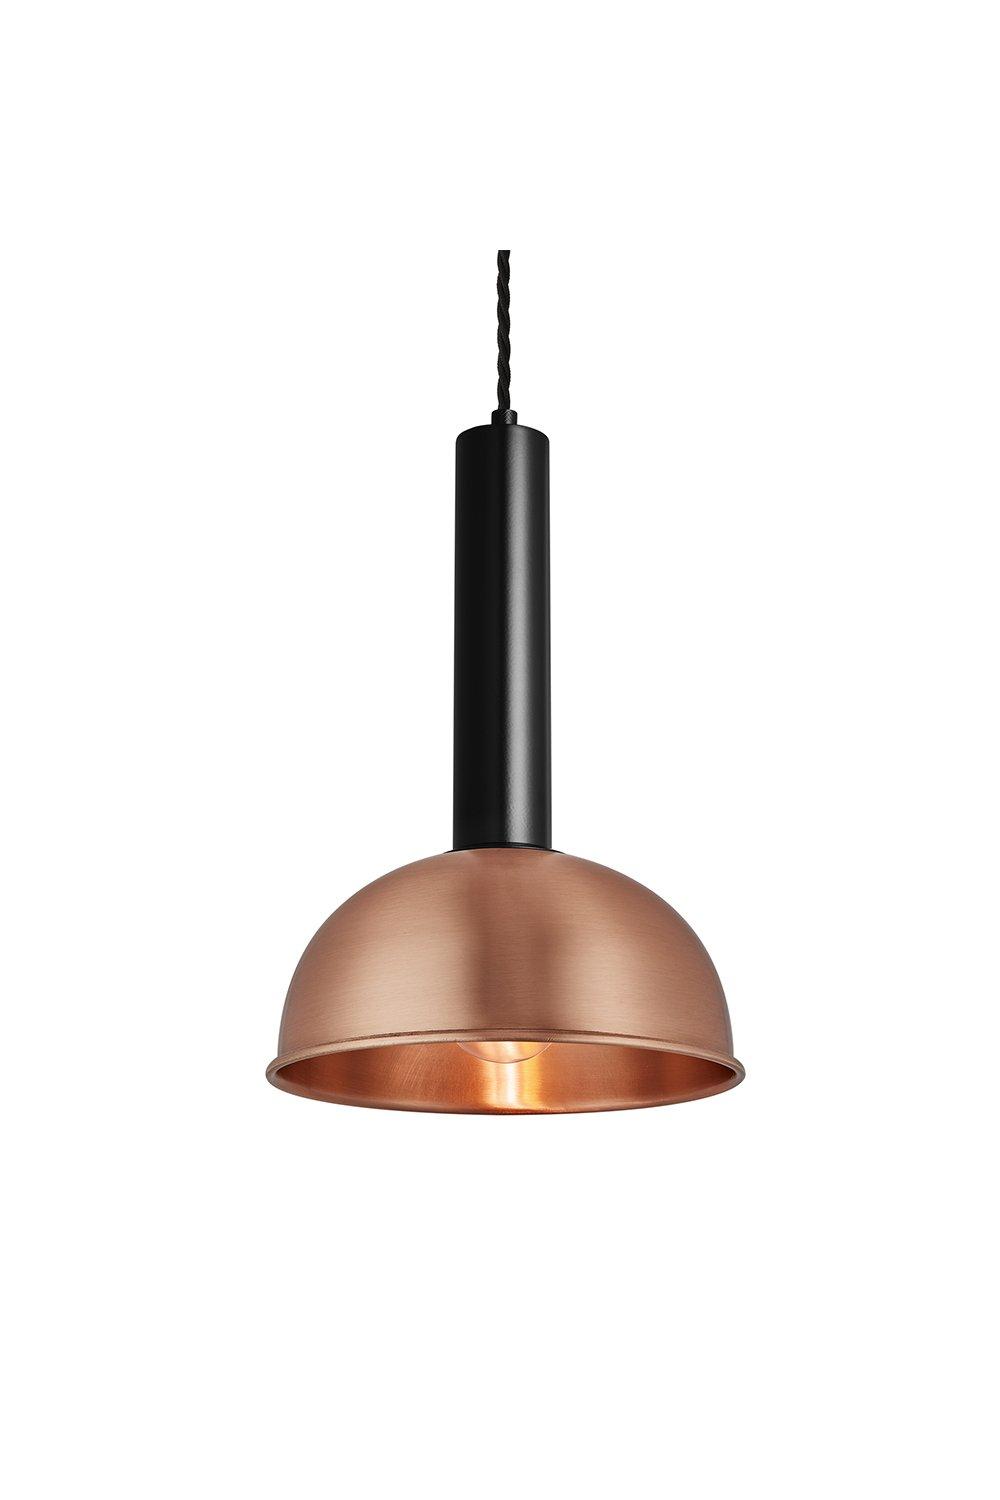 Sleek Cylinder Dome Pendant Light, 8 Inch, Copper, Black Holder